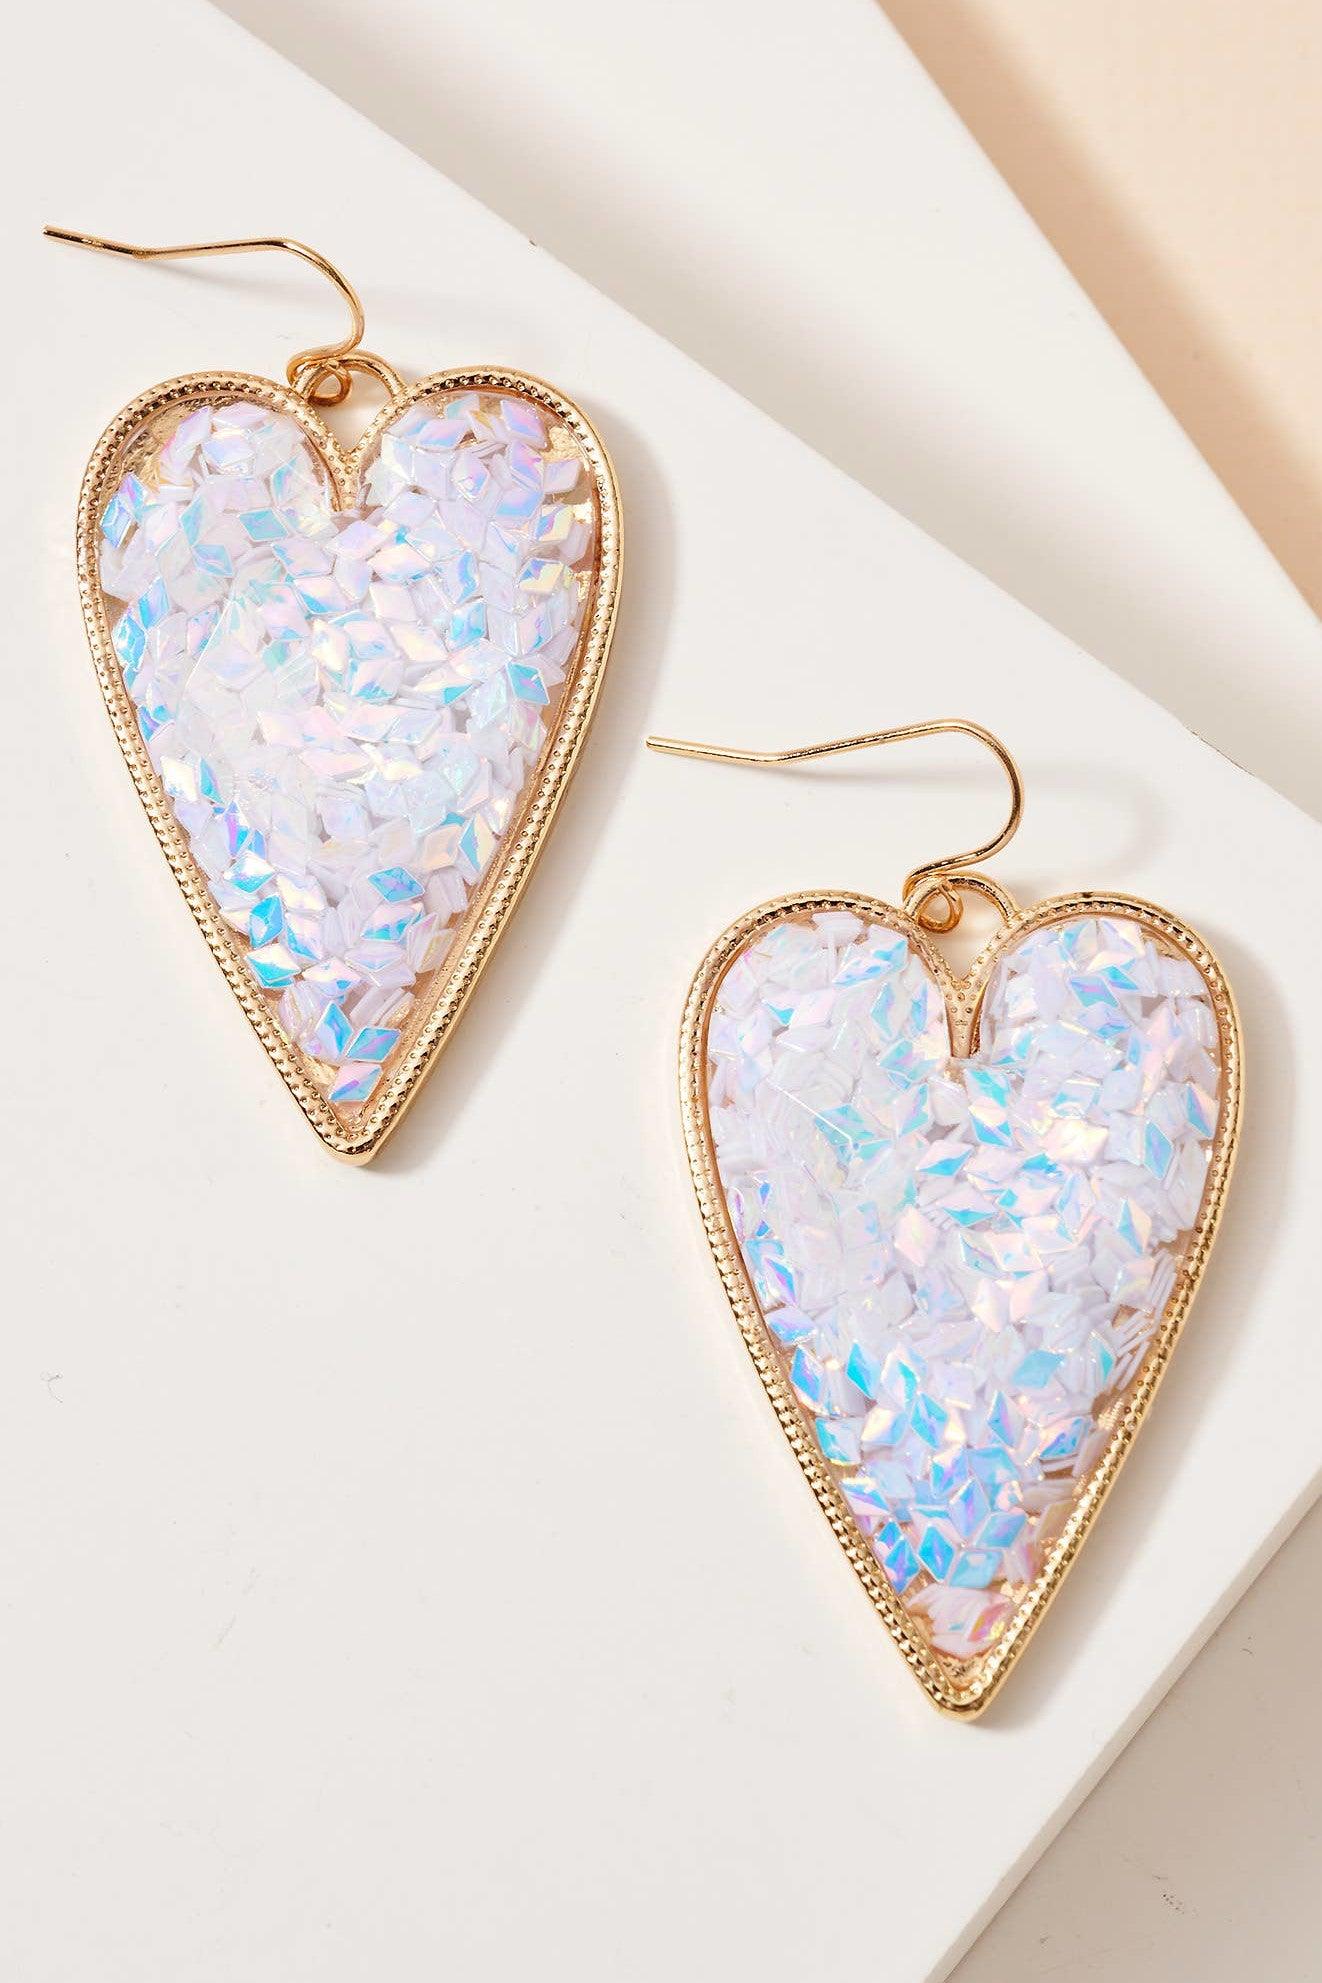 Heart Dangle Earrings - Strawberry Moon Boutique